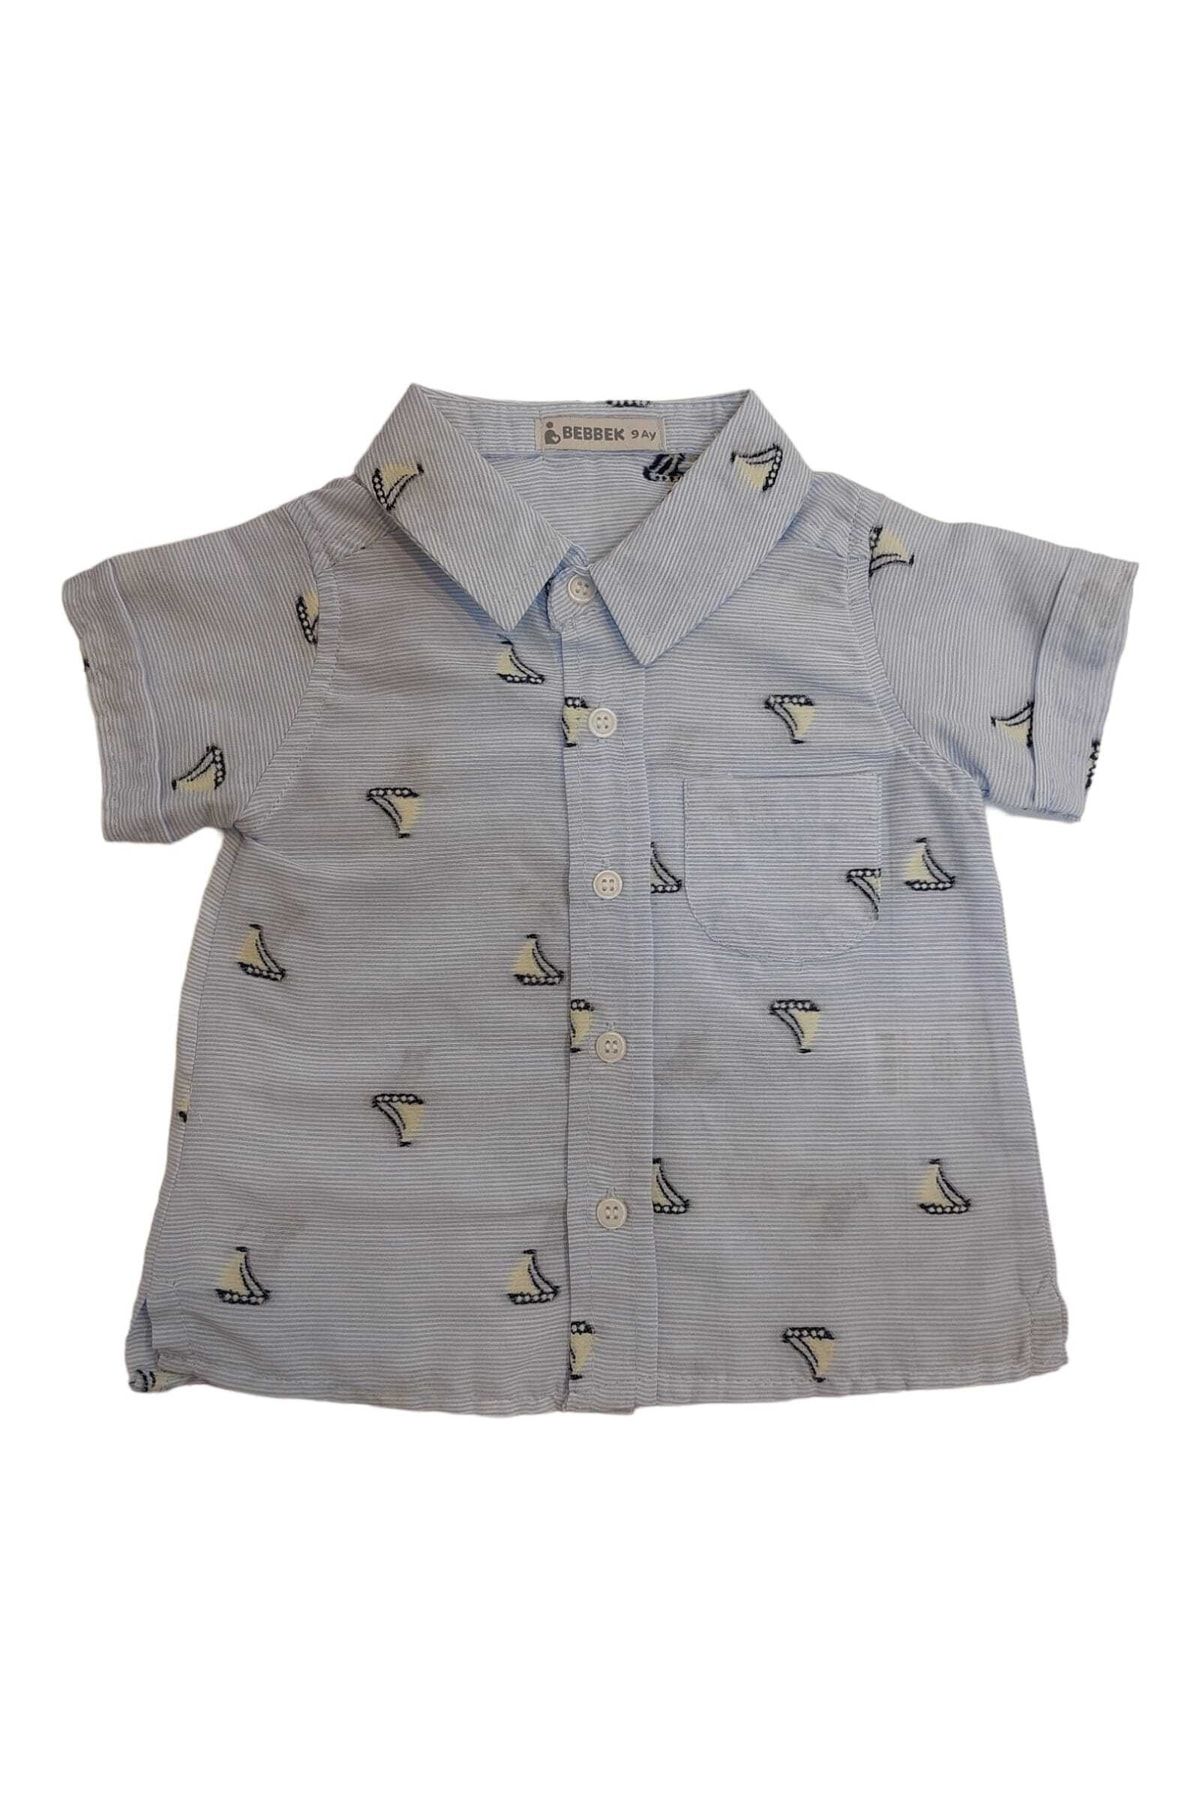 Bebbek Denizci Temalı Kısakol Erkek Çocuk Gömlek